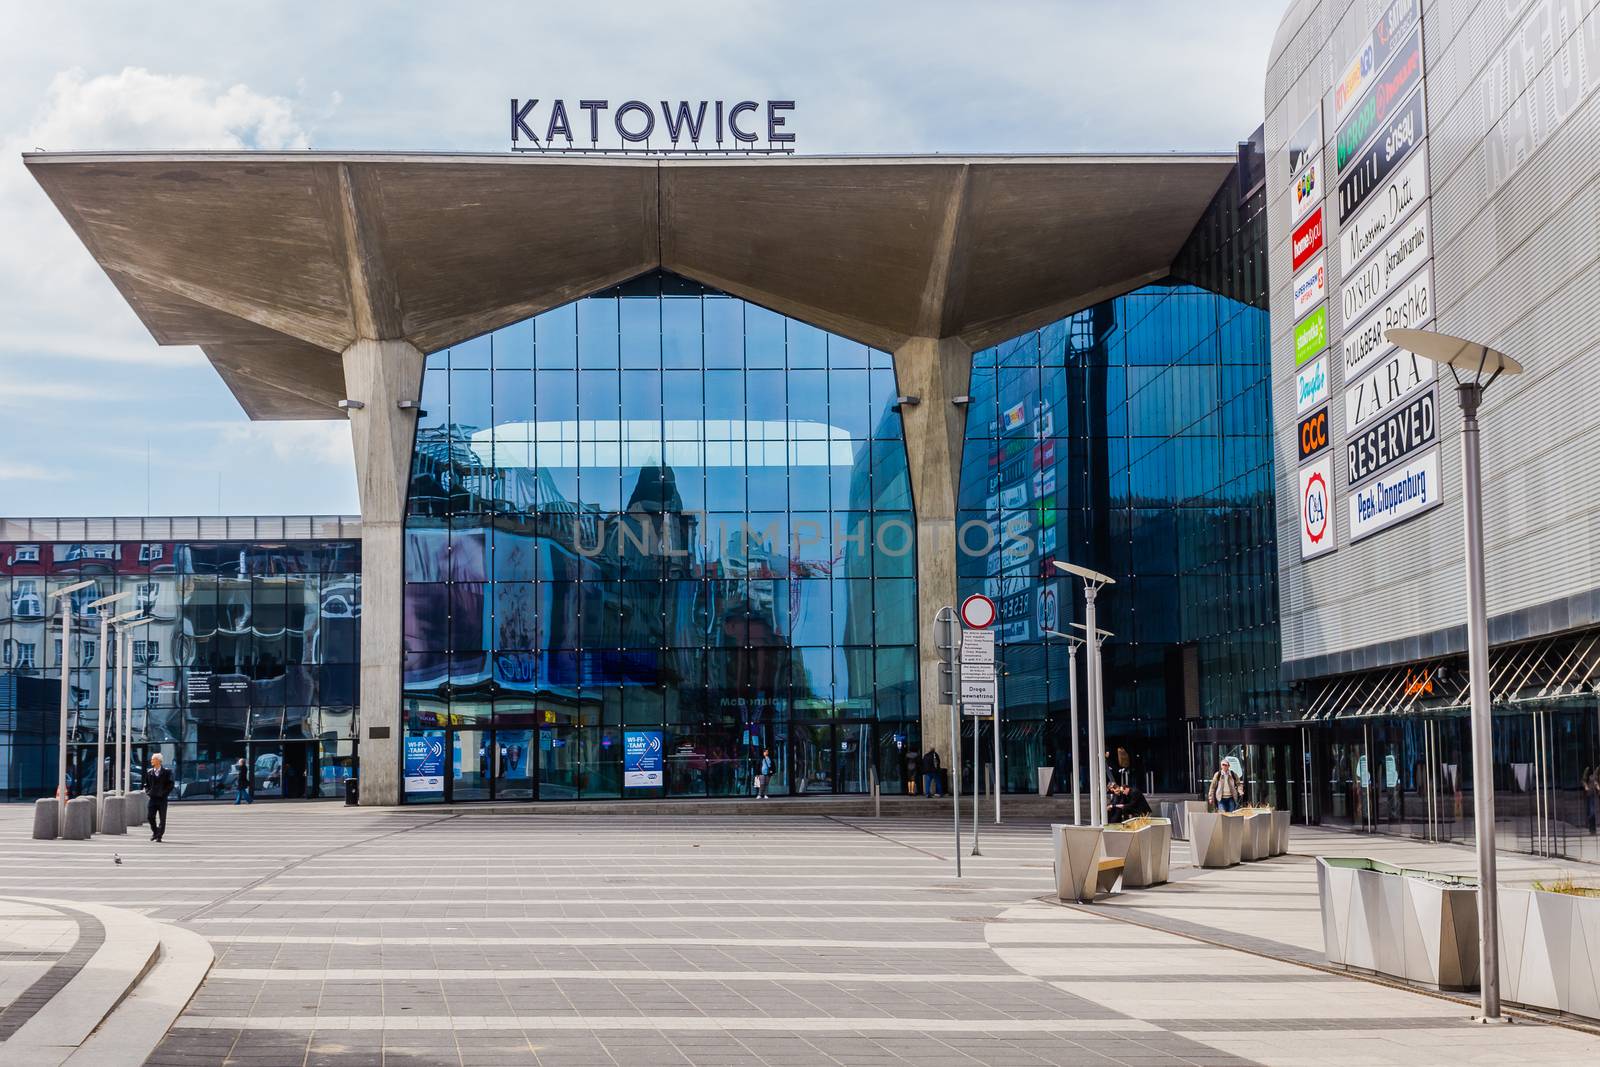 New railway station in Katowice by pawel_szczepanski